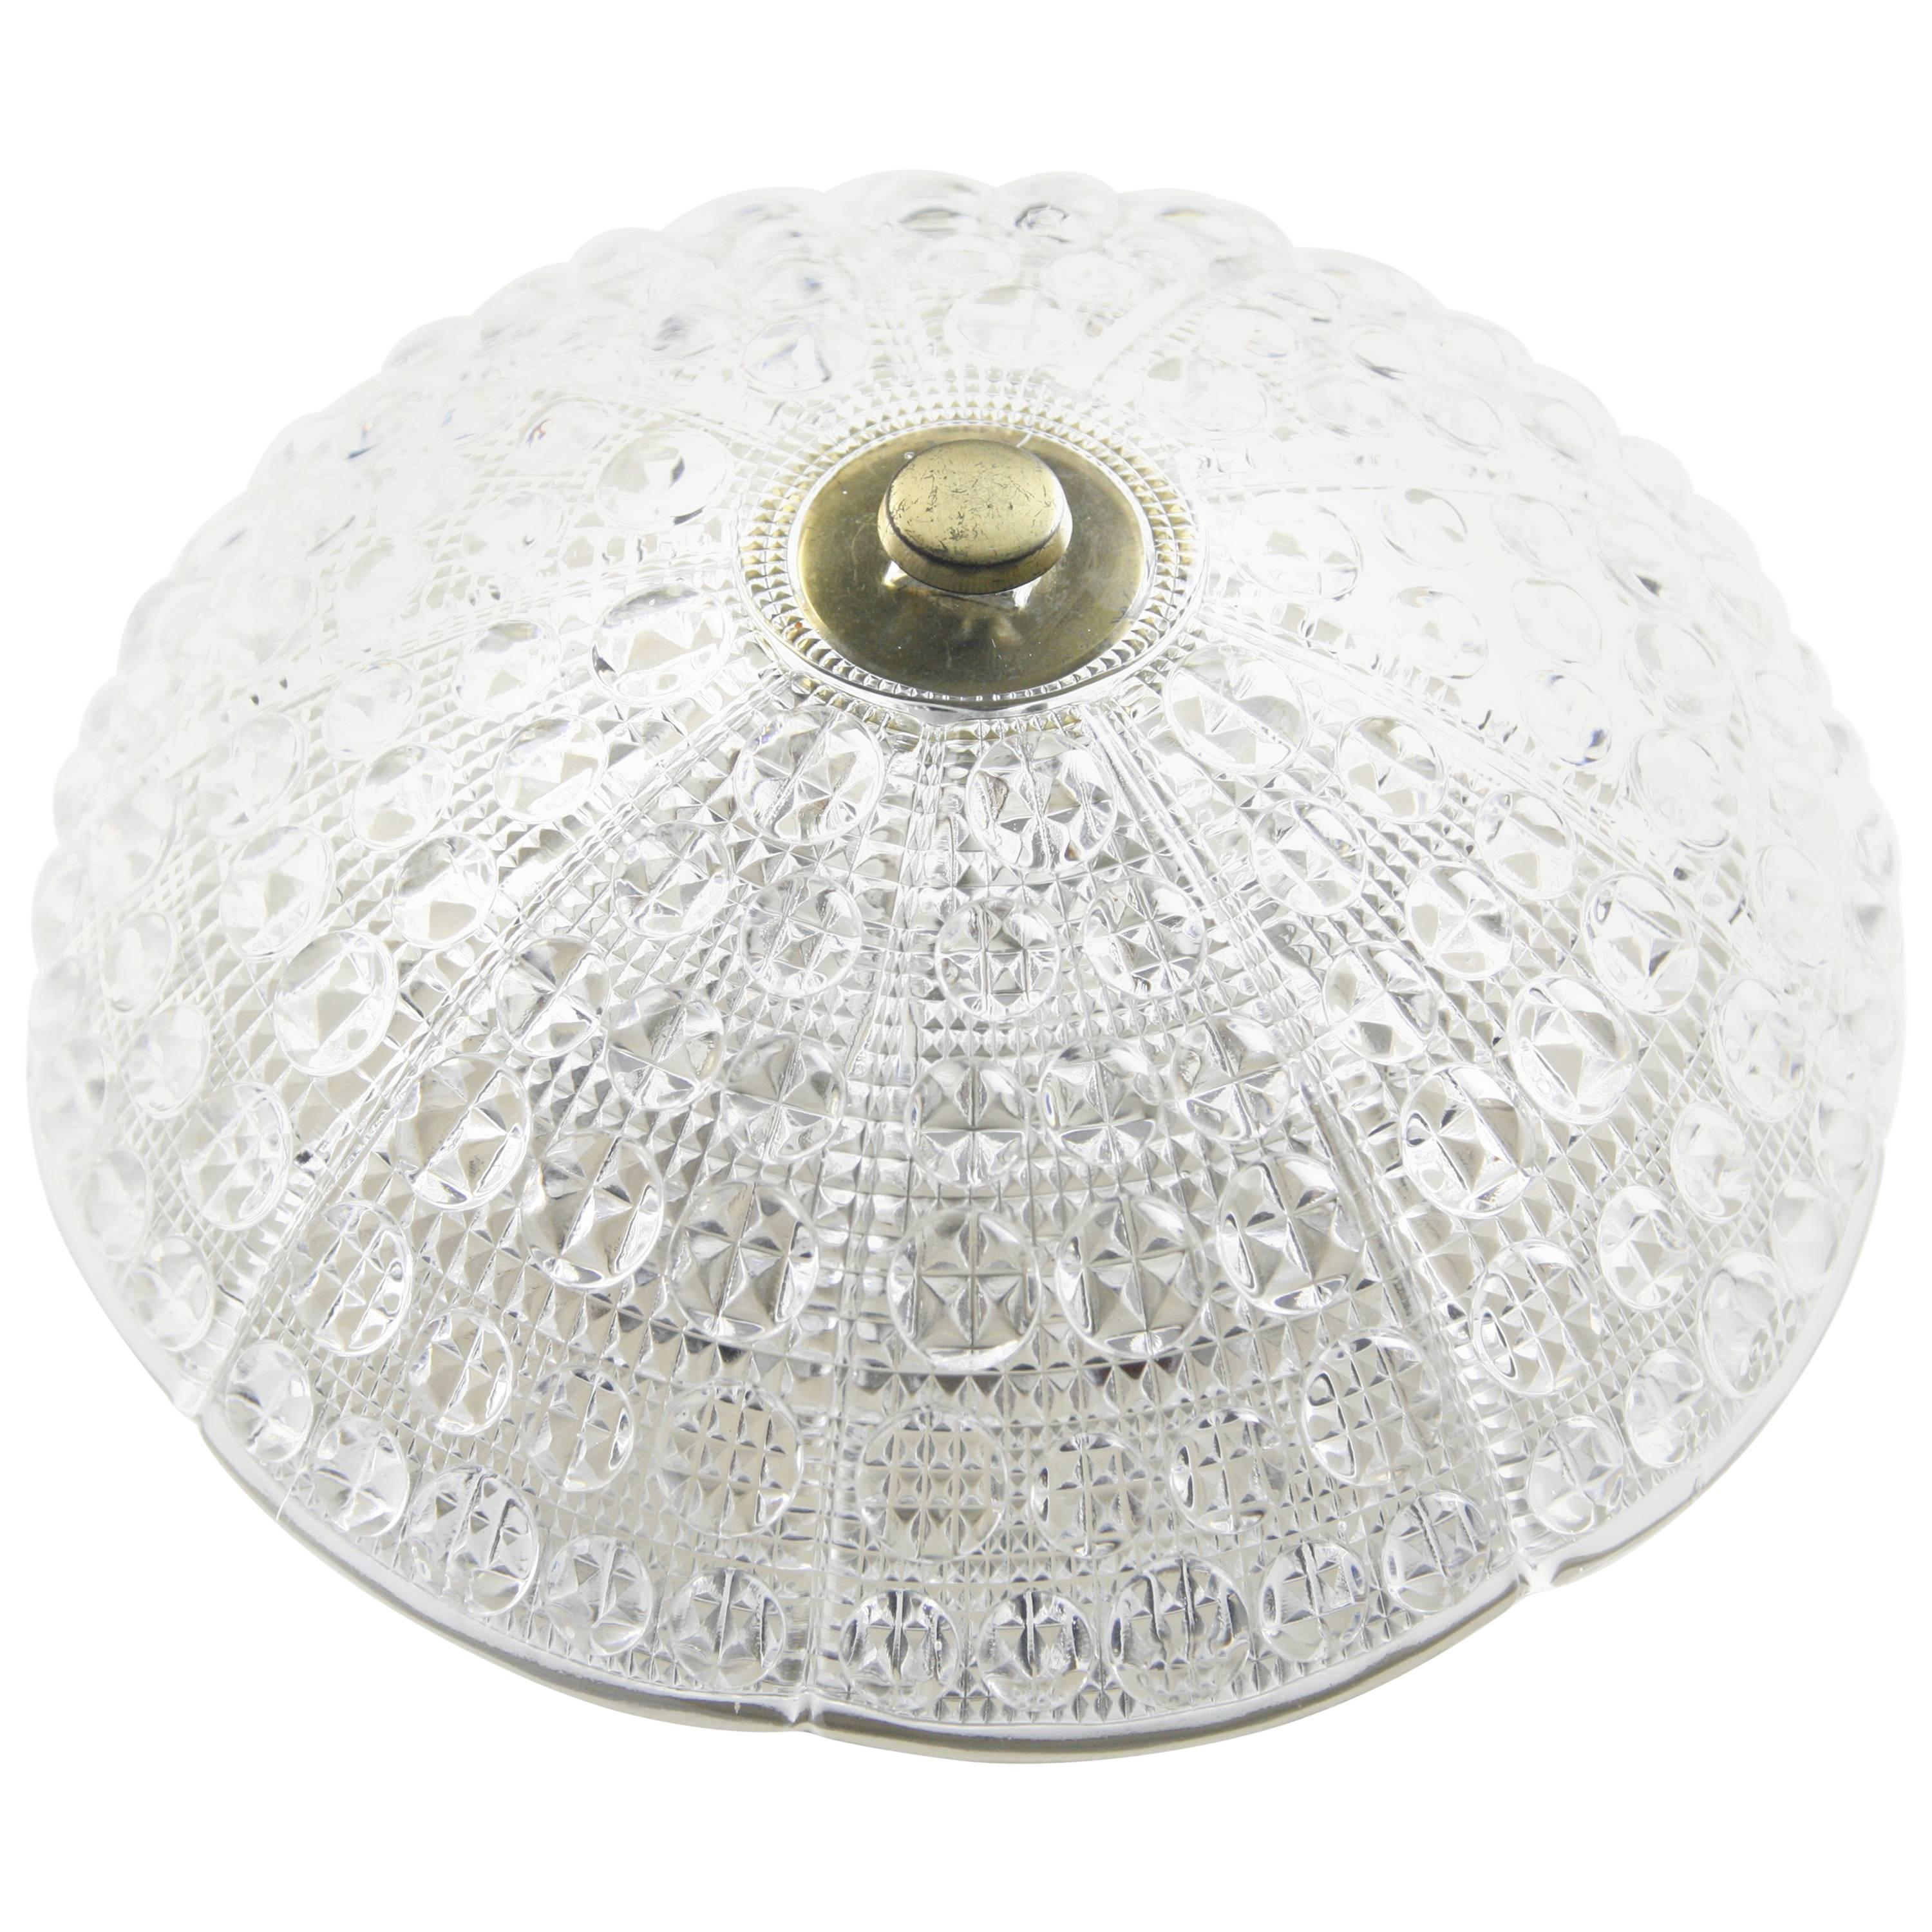 La plaque de plafond à montage encastré d'Orrefors est en métal blanc crème avec six douilles de candélabre européennes. L'abat-jour est en cristal bulle pressé en forme de dôme et les détails en laiton.

 